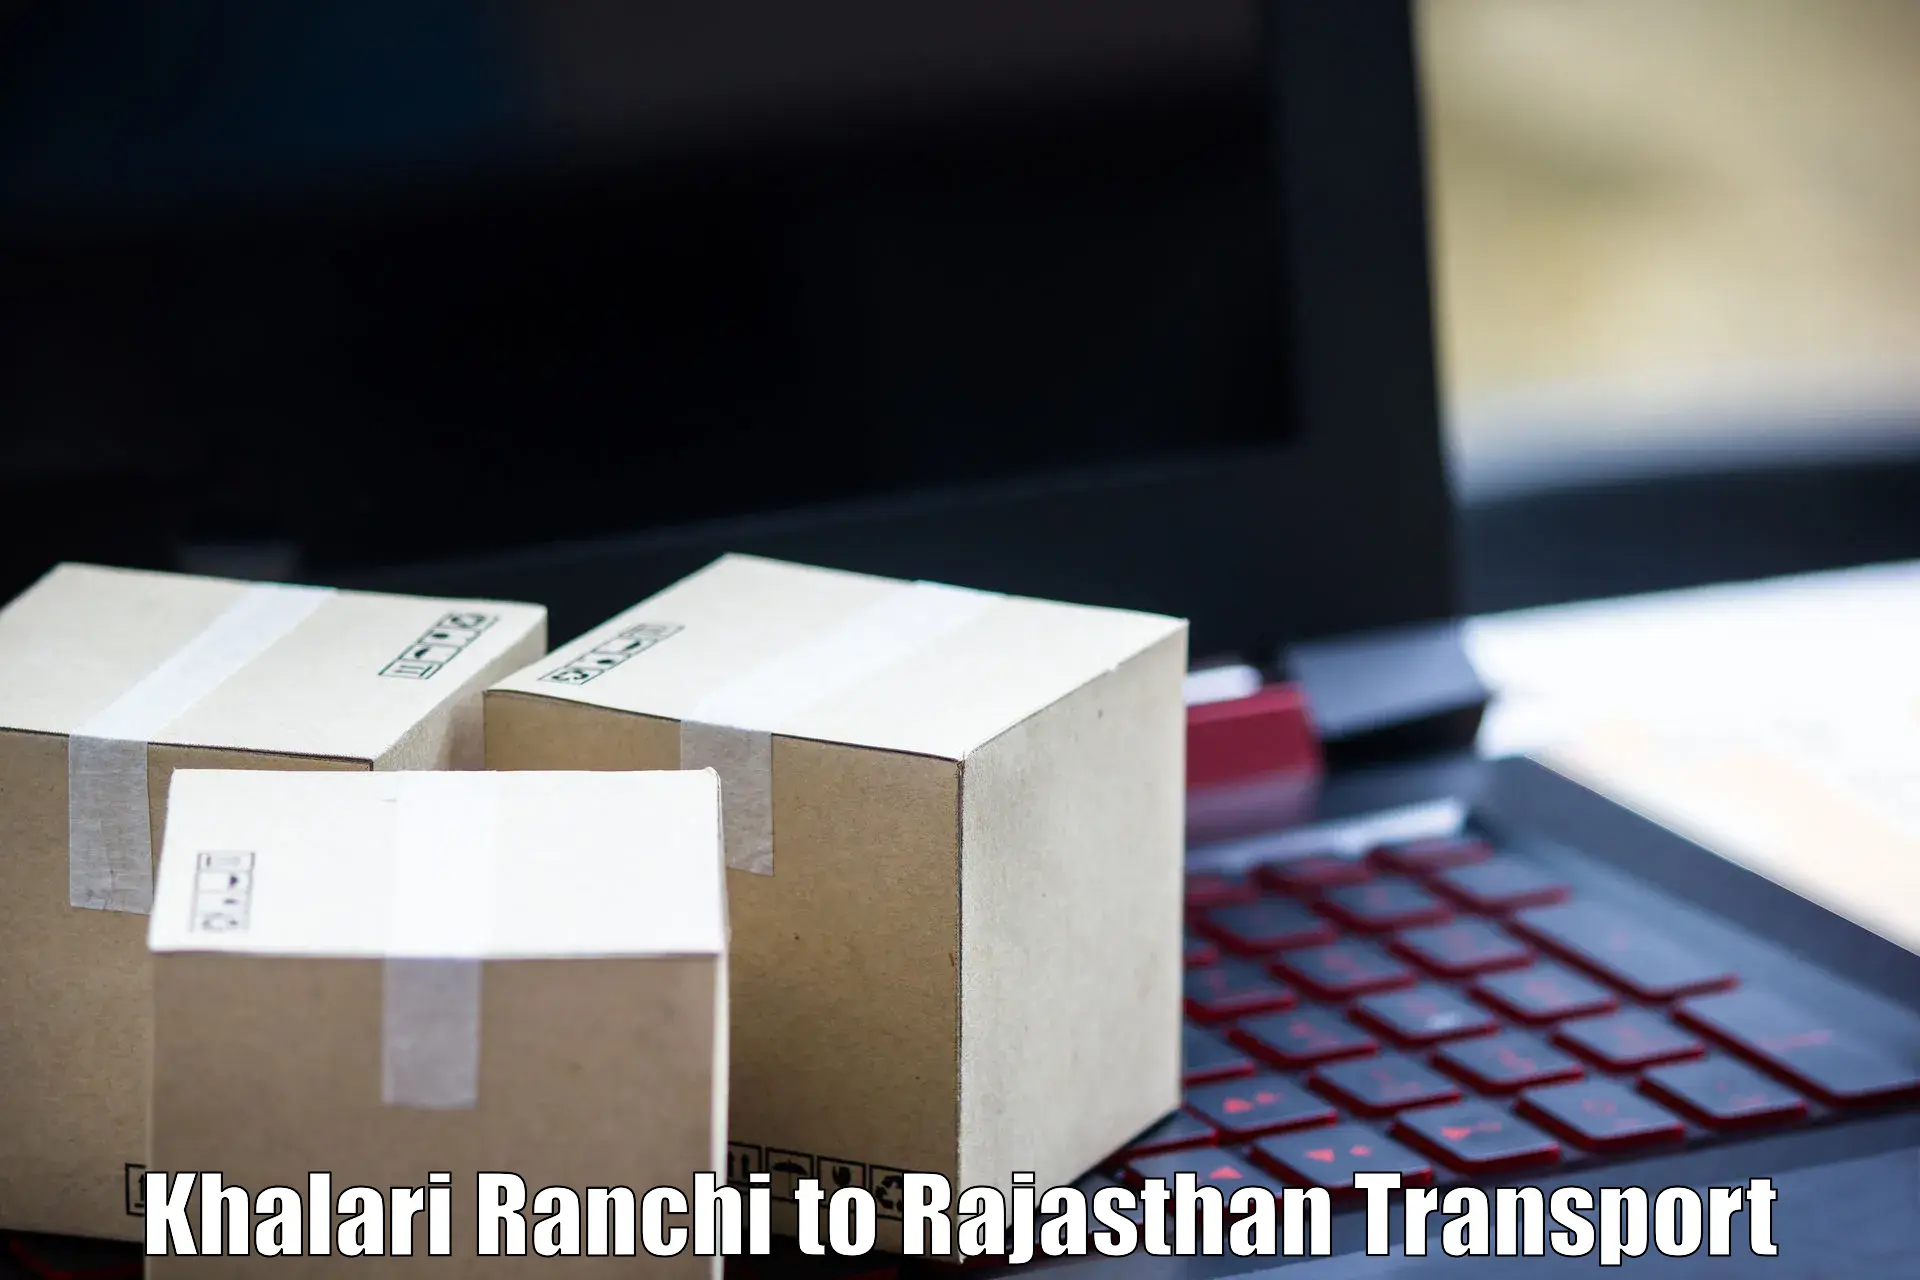 Furniture transport service Khalari Ranchi to Banar